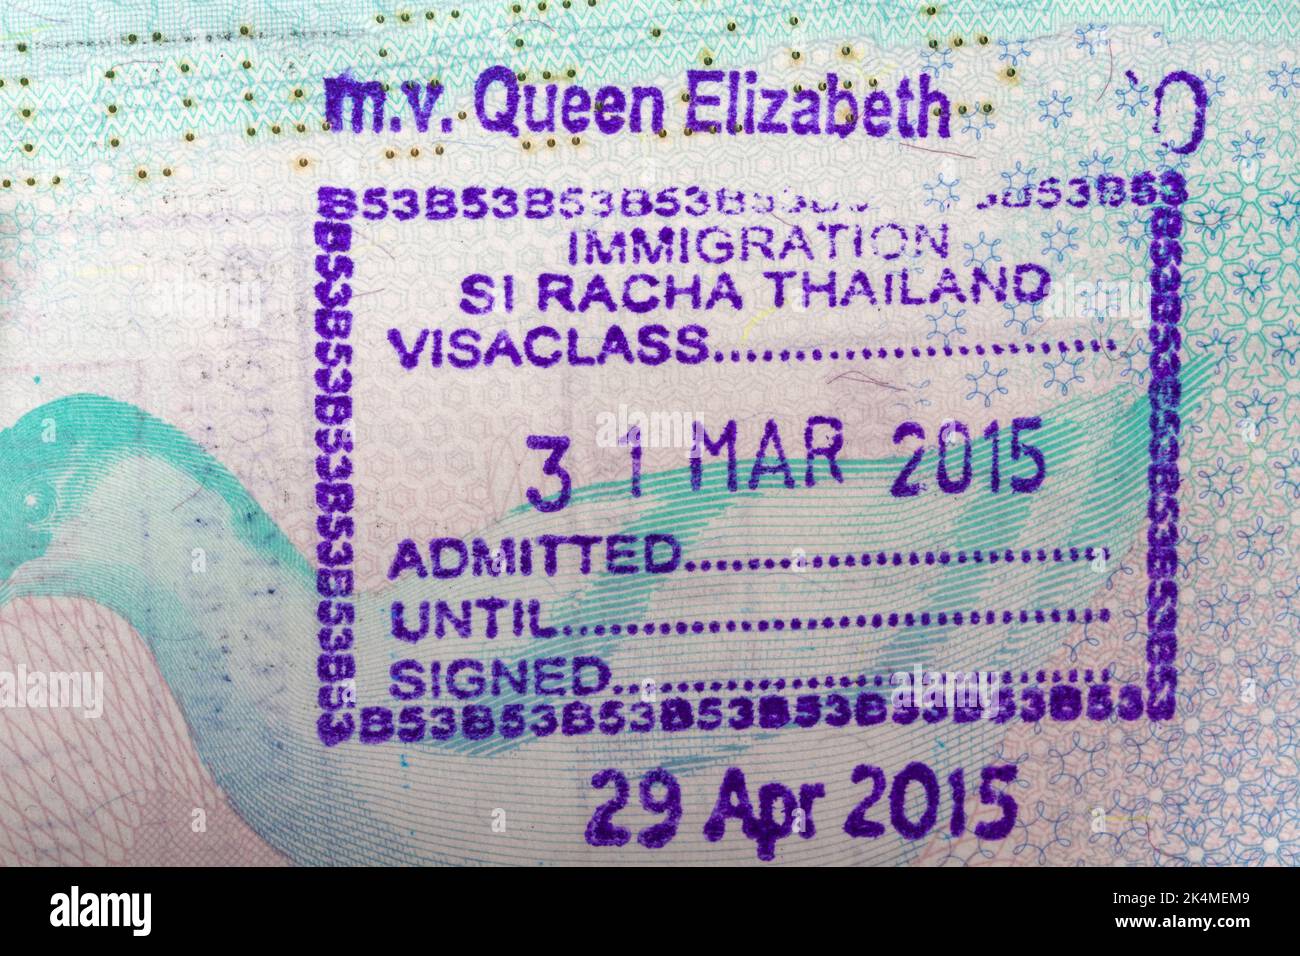 Immigration Si Racha Thailand Visaclass m.v. Queen Elizabeth 31 Mar 2015 Briefmarke im britischen Pass Stockfoto